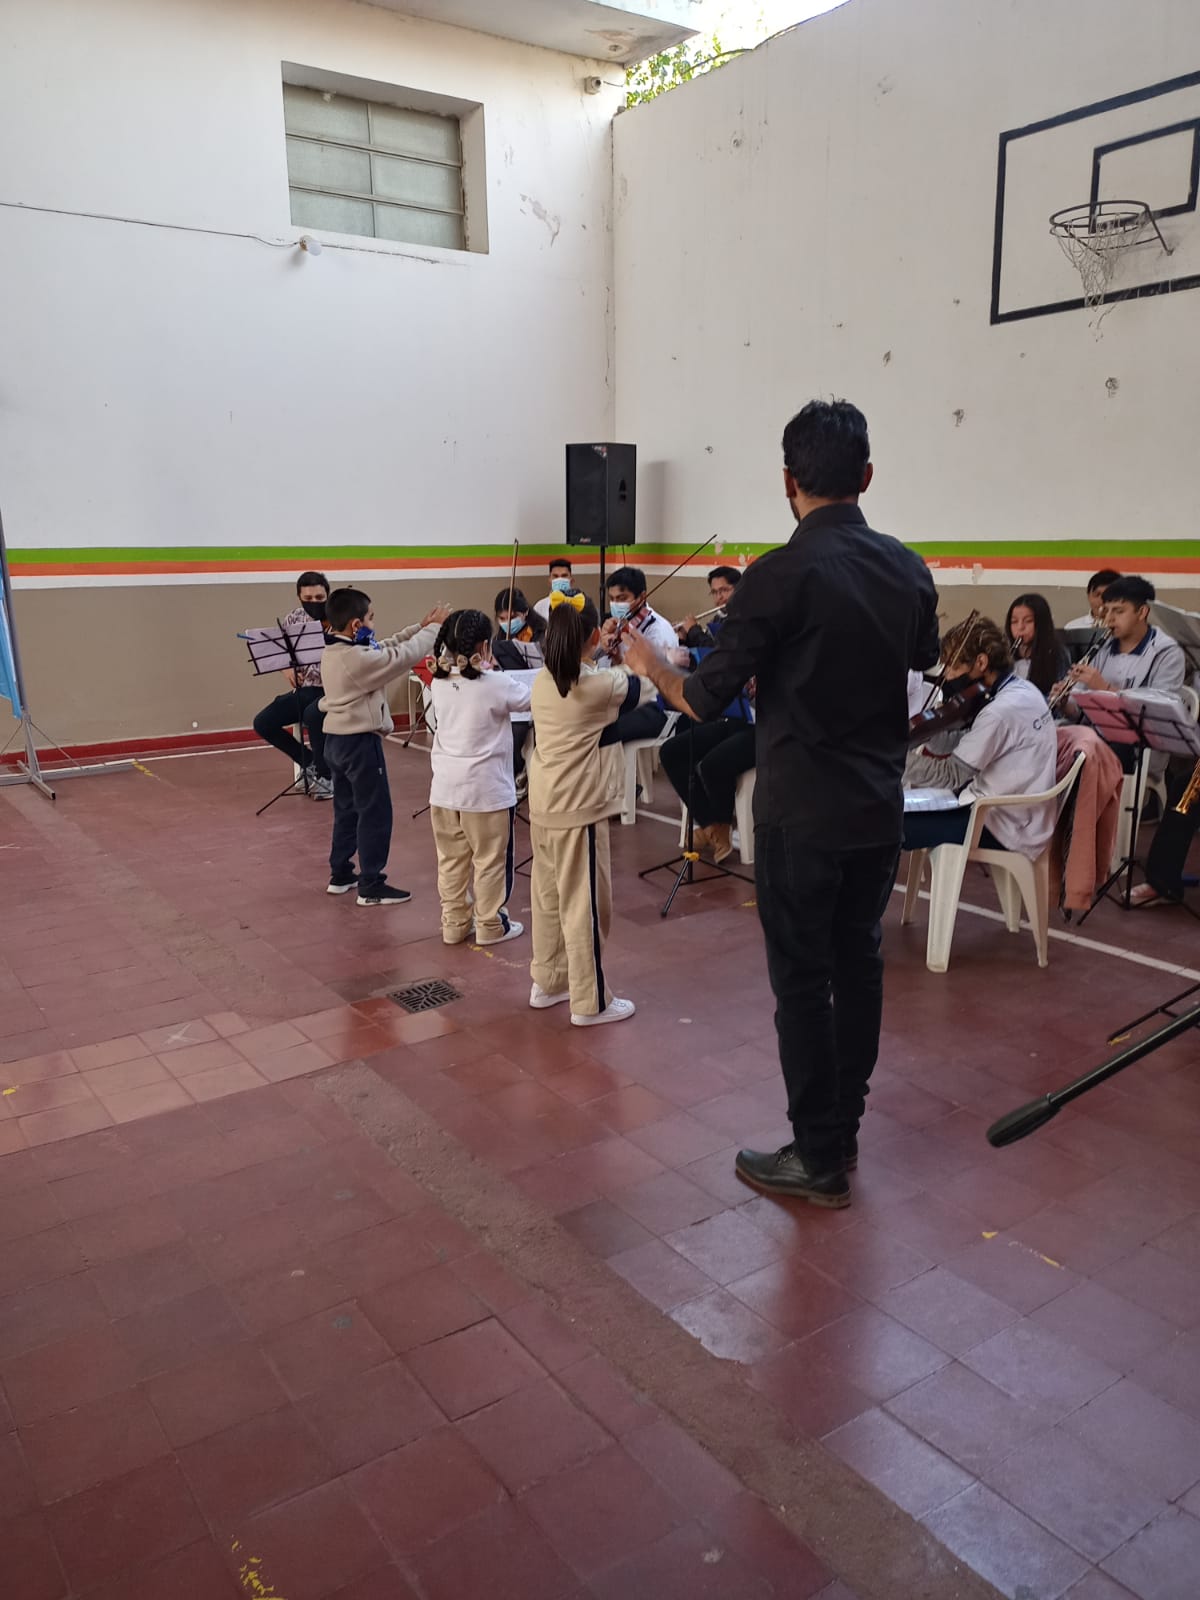 La Orquesta Juvenil del Ministerio de Educacion se presento en el Colegio Rodolfo Senet1